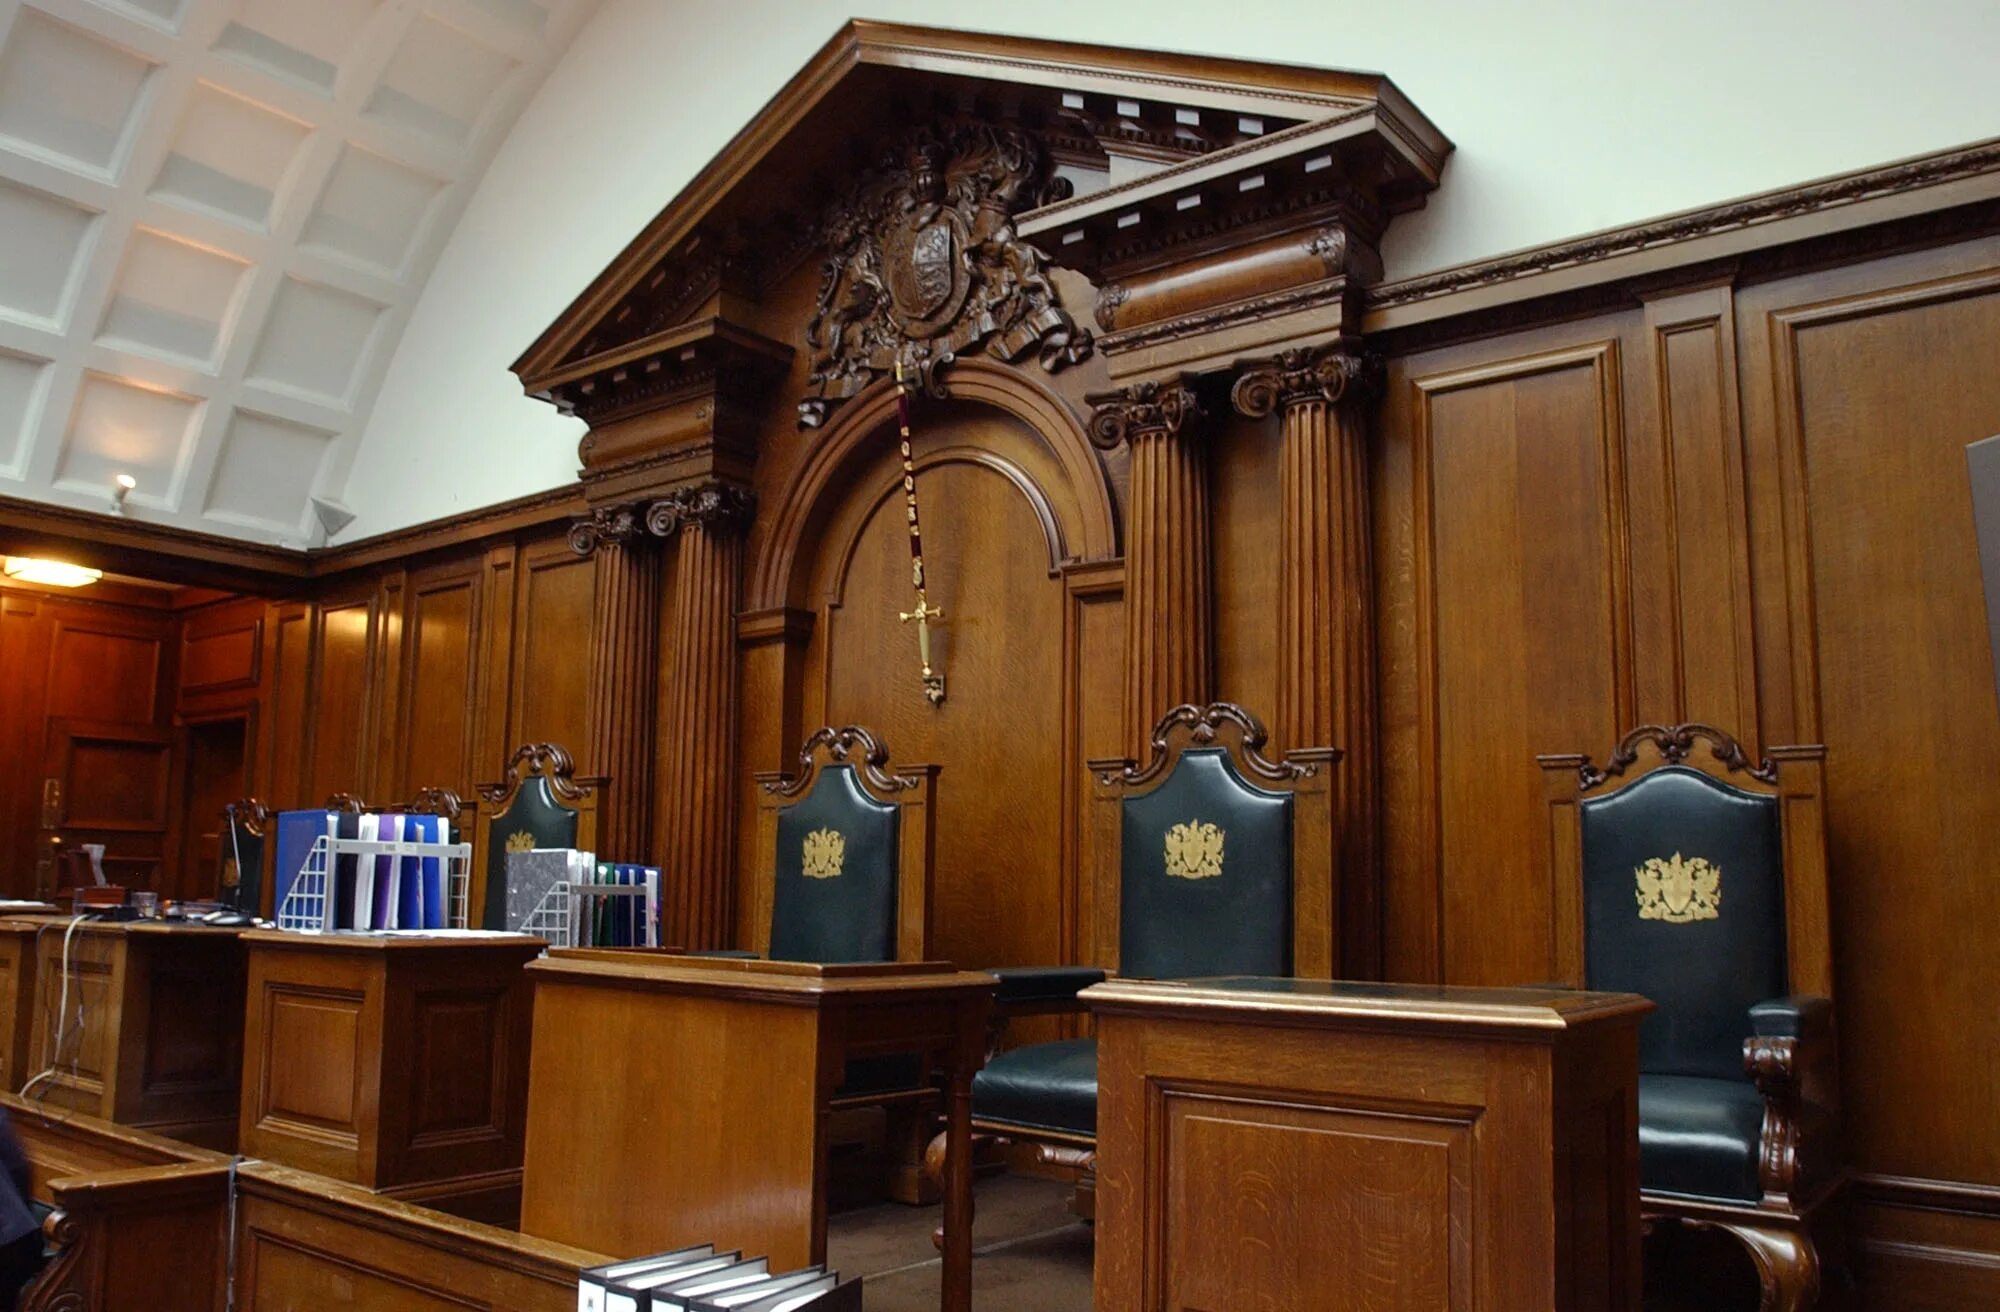 Суд снизу. Зал суда Олд Бейли. Зал суда в Англии. Зал судебных заседаний в Англии. Зал судебных заседаний в Англии 19 века.